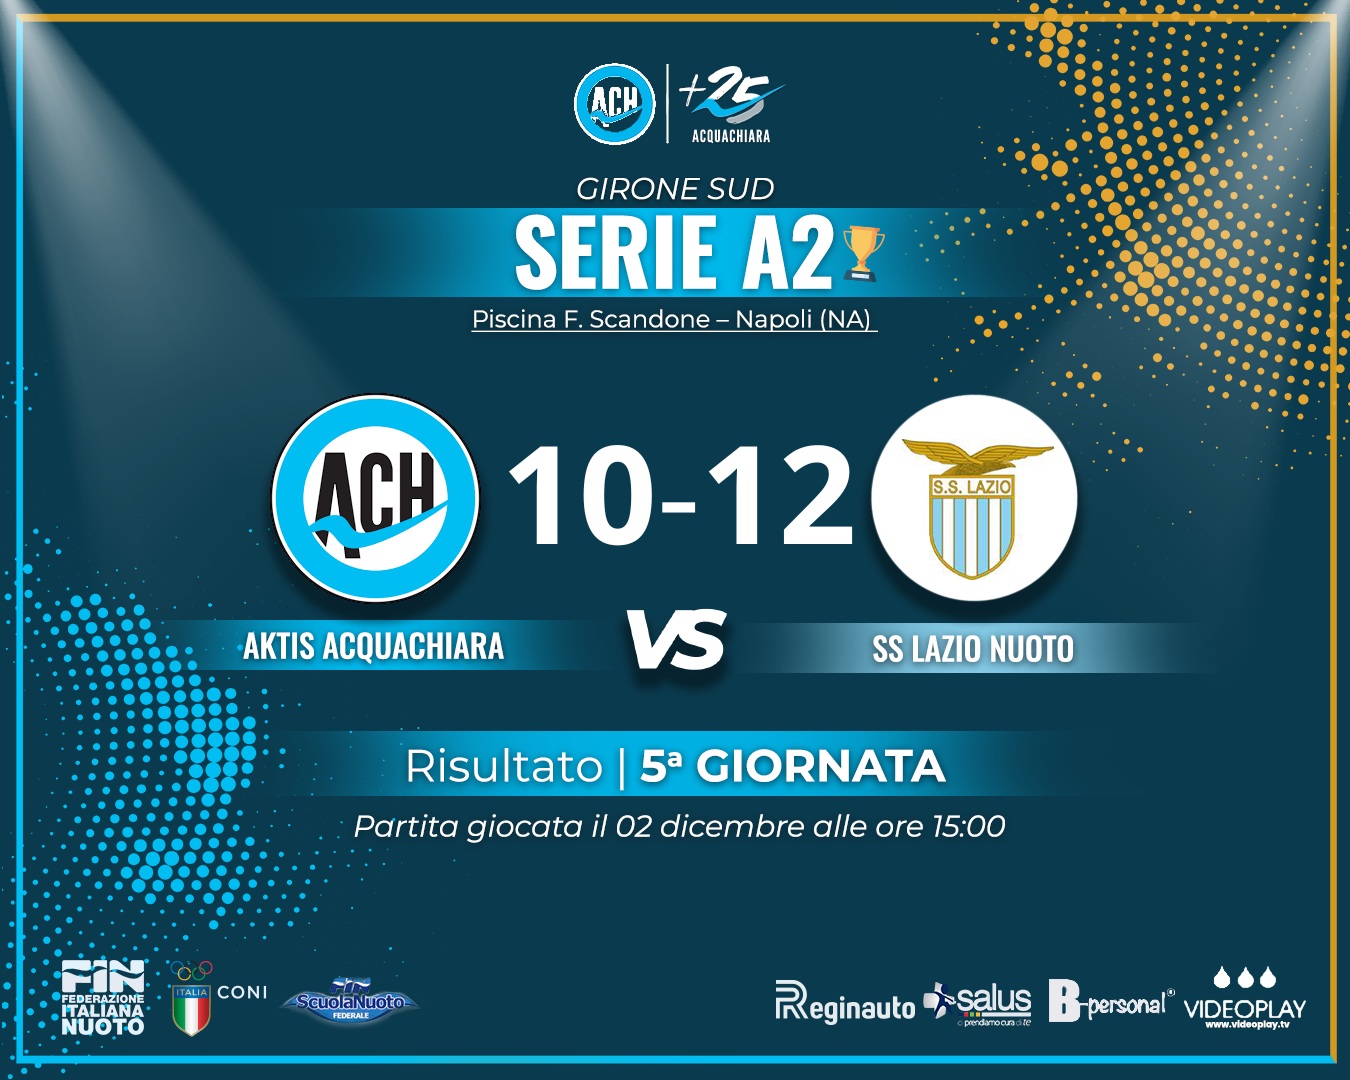 Aktis Acquachiara cede 12-10 in casa contro la Lazio